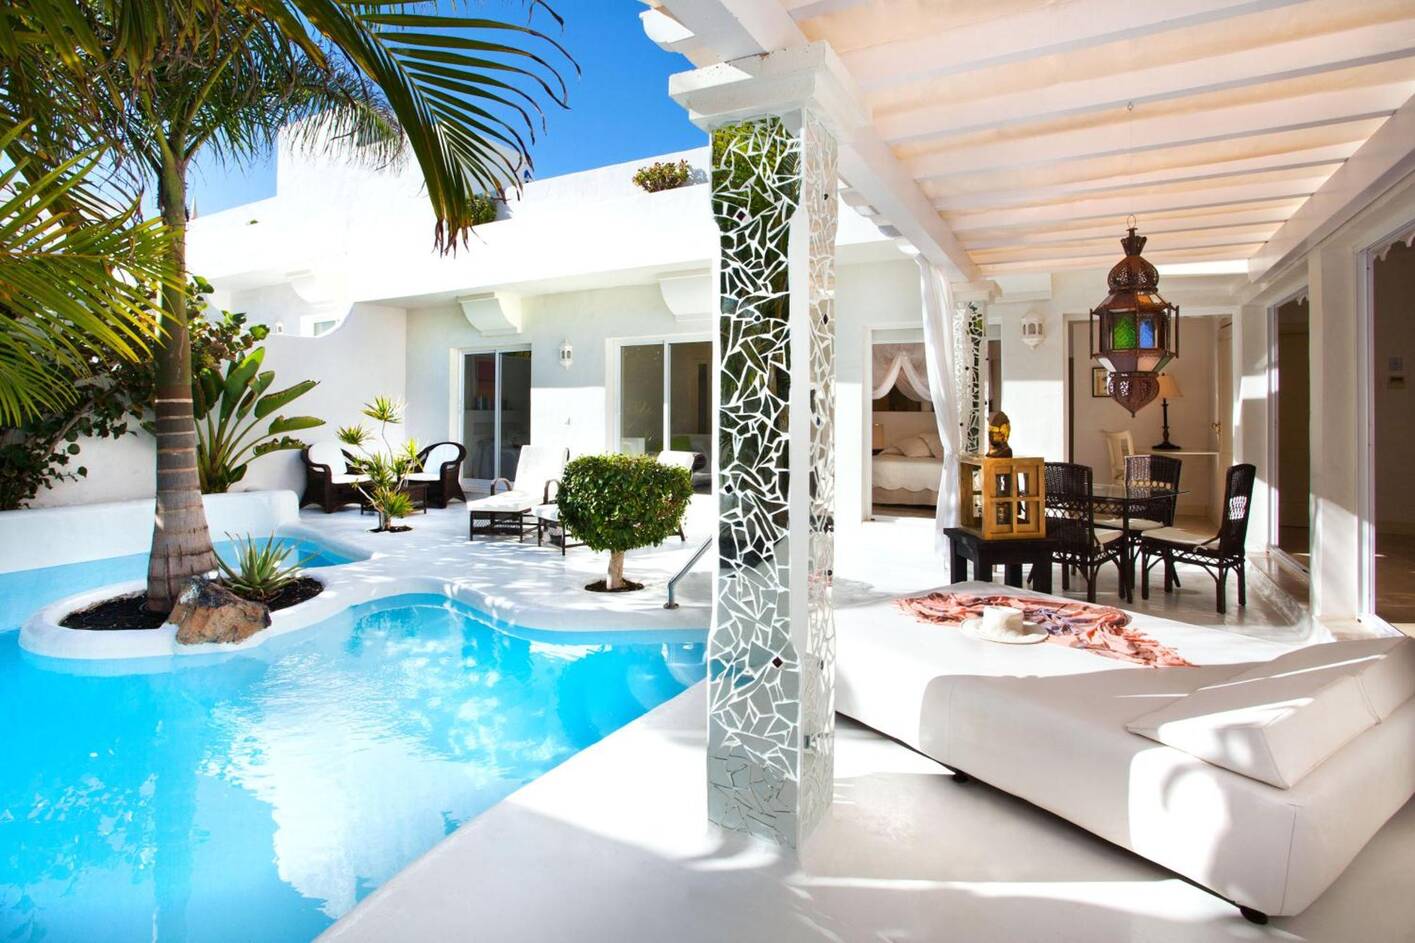 KATIS Villas Boutique Fuerteventura, unas villas en Fuerteventura con piscina privada para una escapada romántica